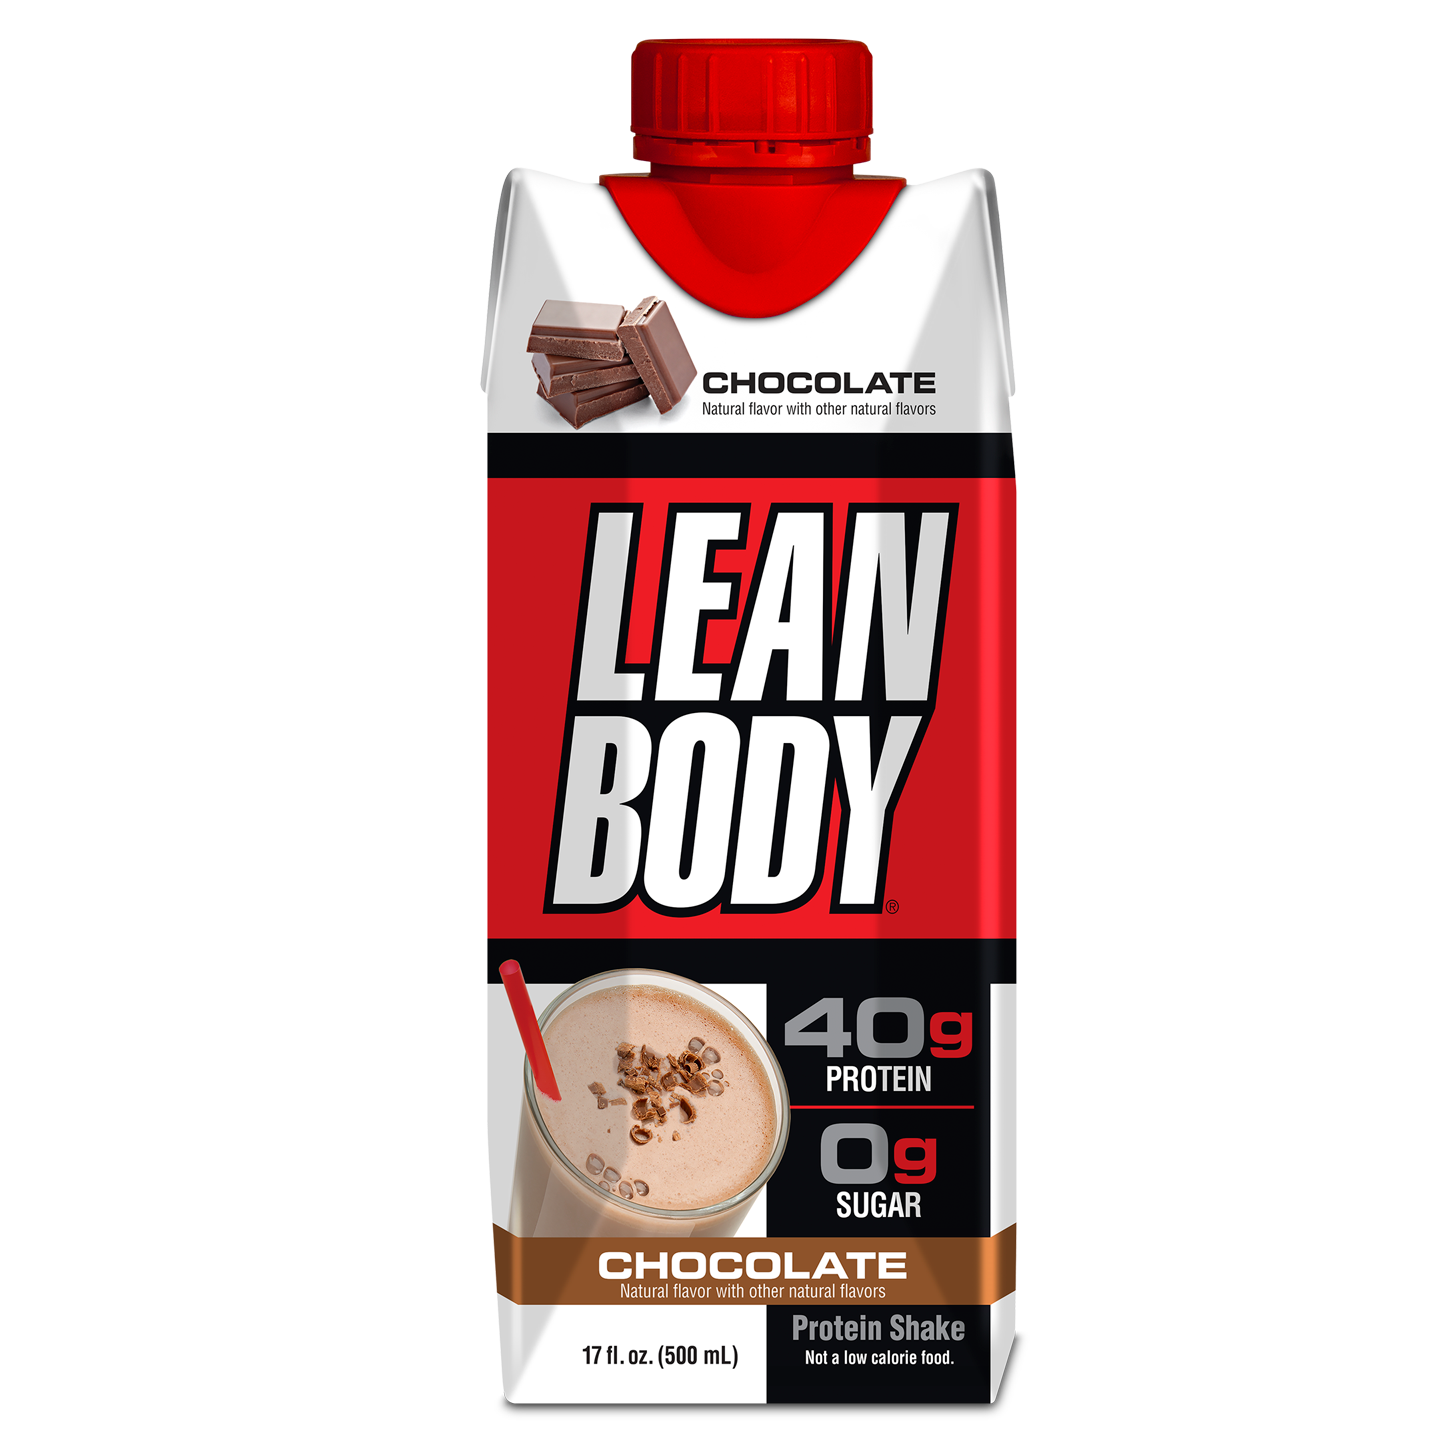 Labrada Lean Body Protein Shake